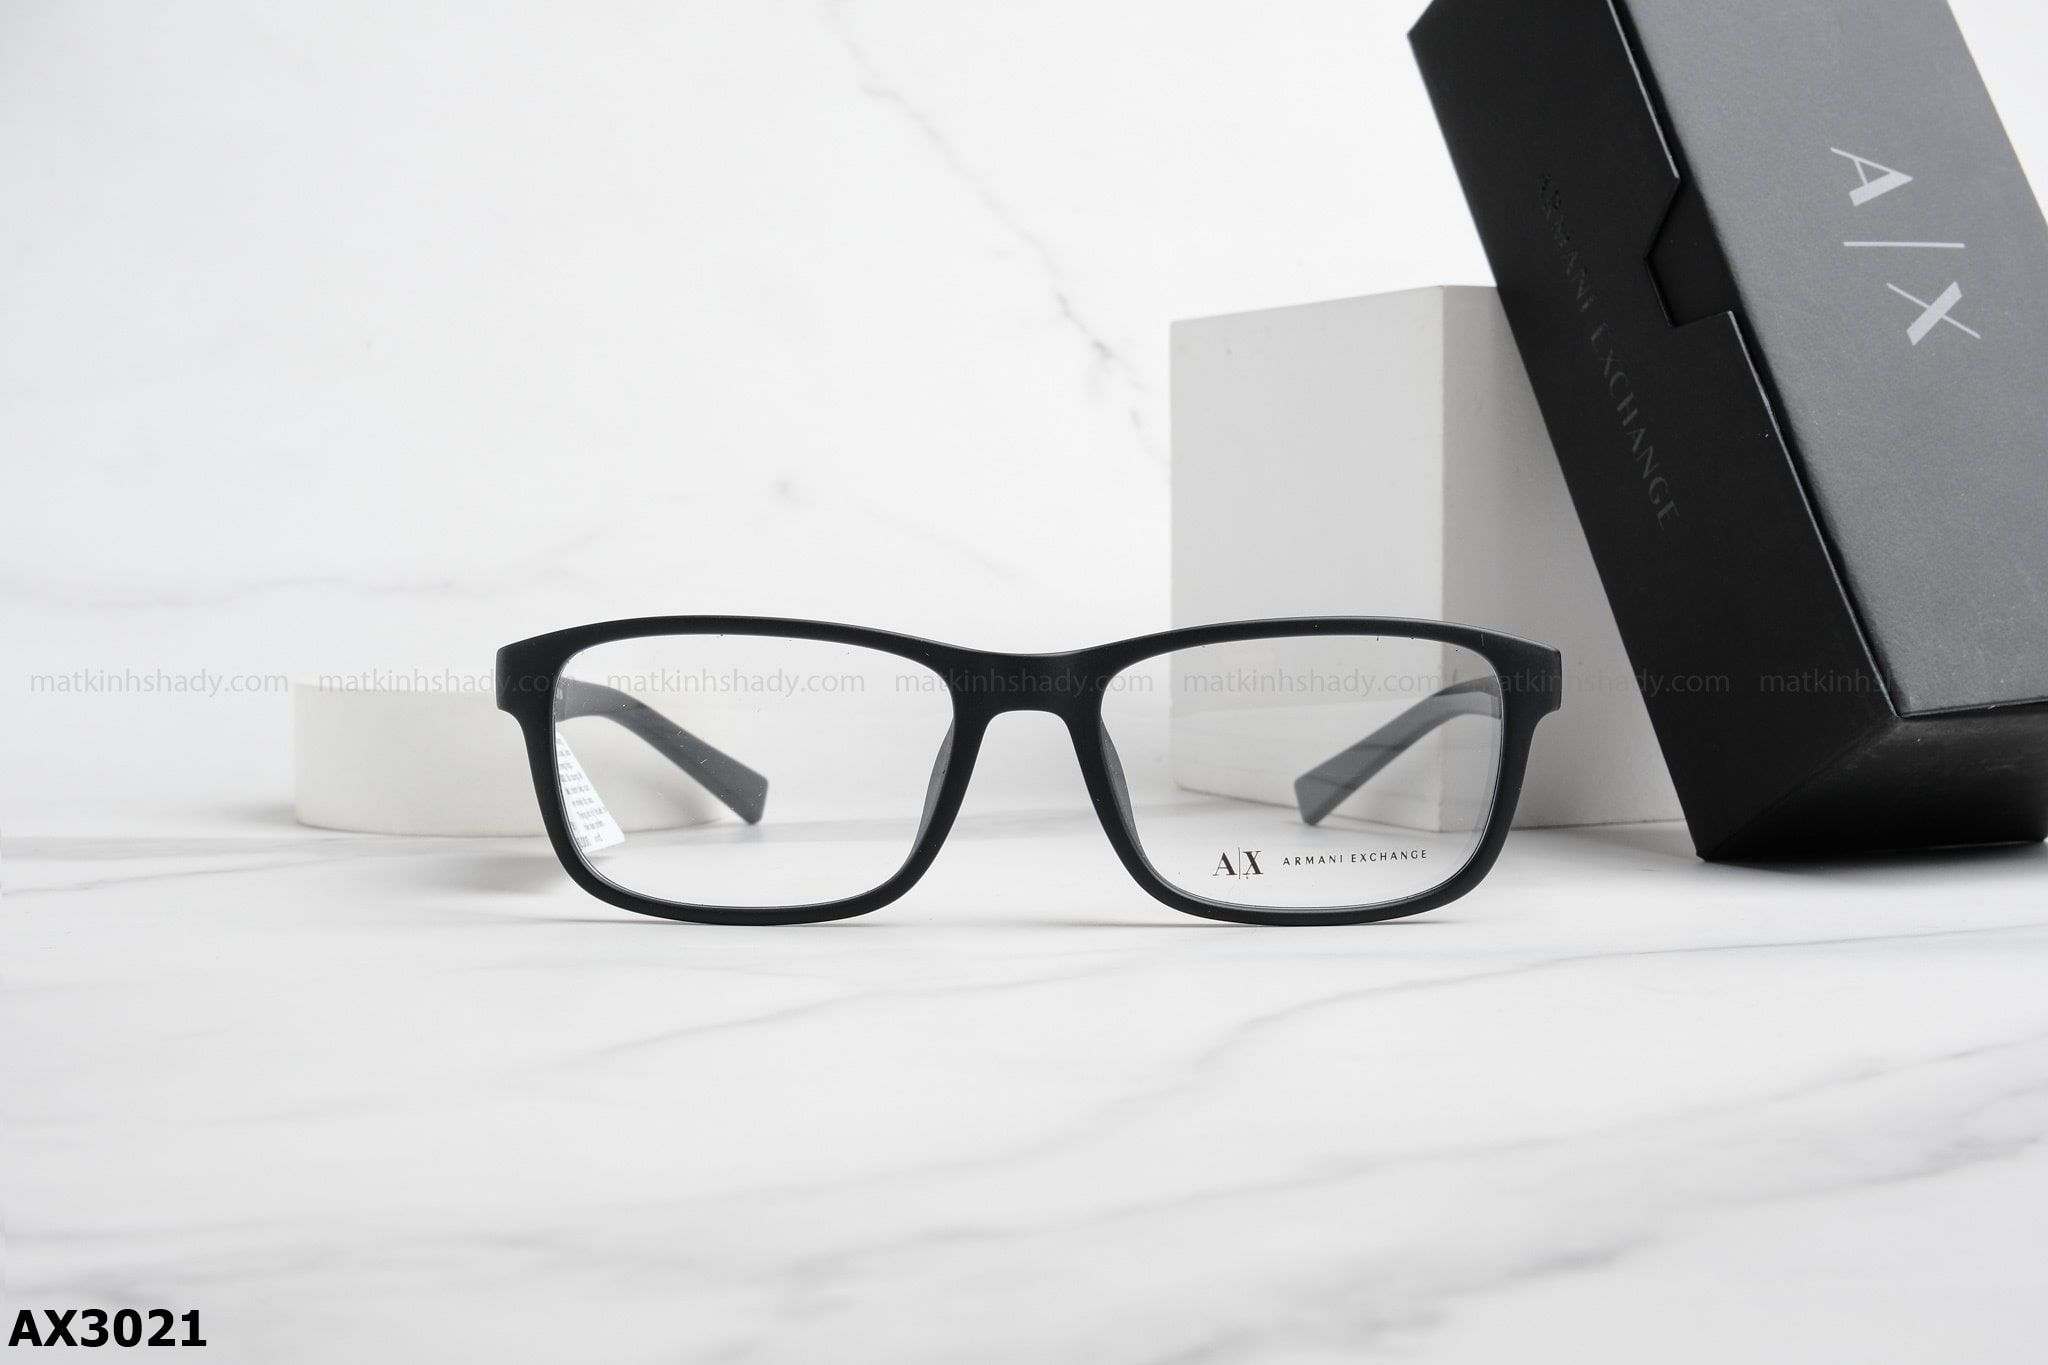  Armani Exchange Eyewear - Glasses - AX3021 